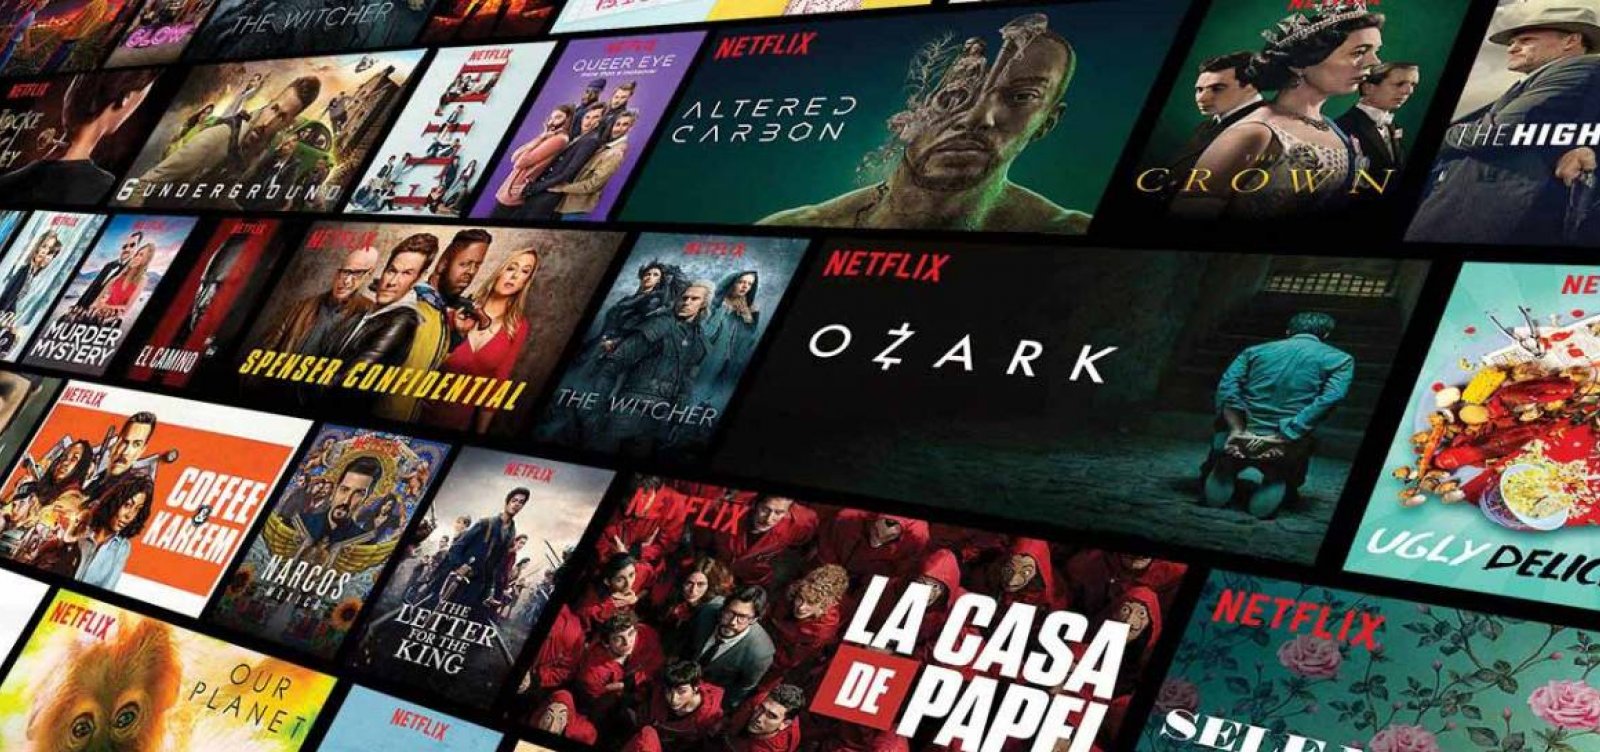 Lançamentos da Netflix em novembro: Veja dicas de séries e filmes